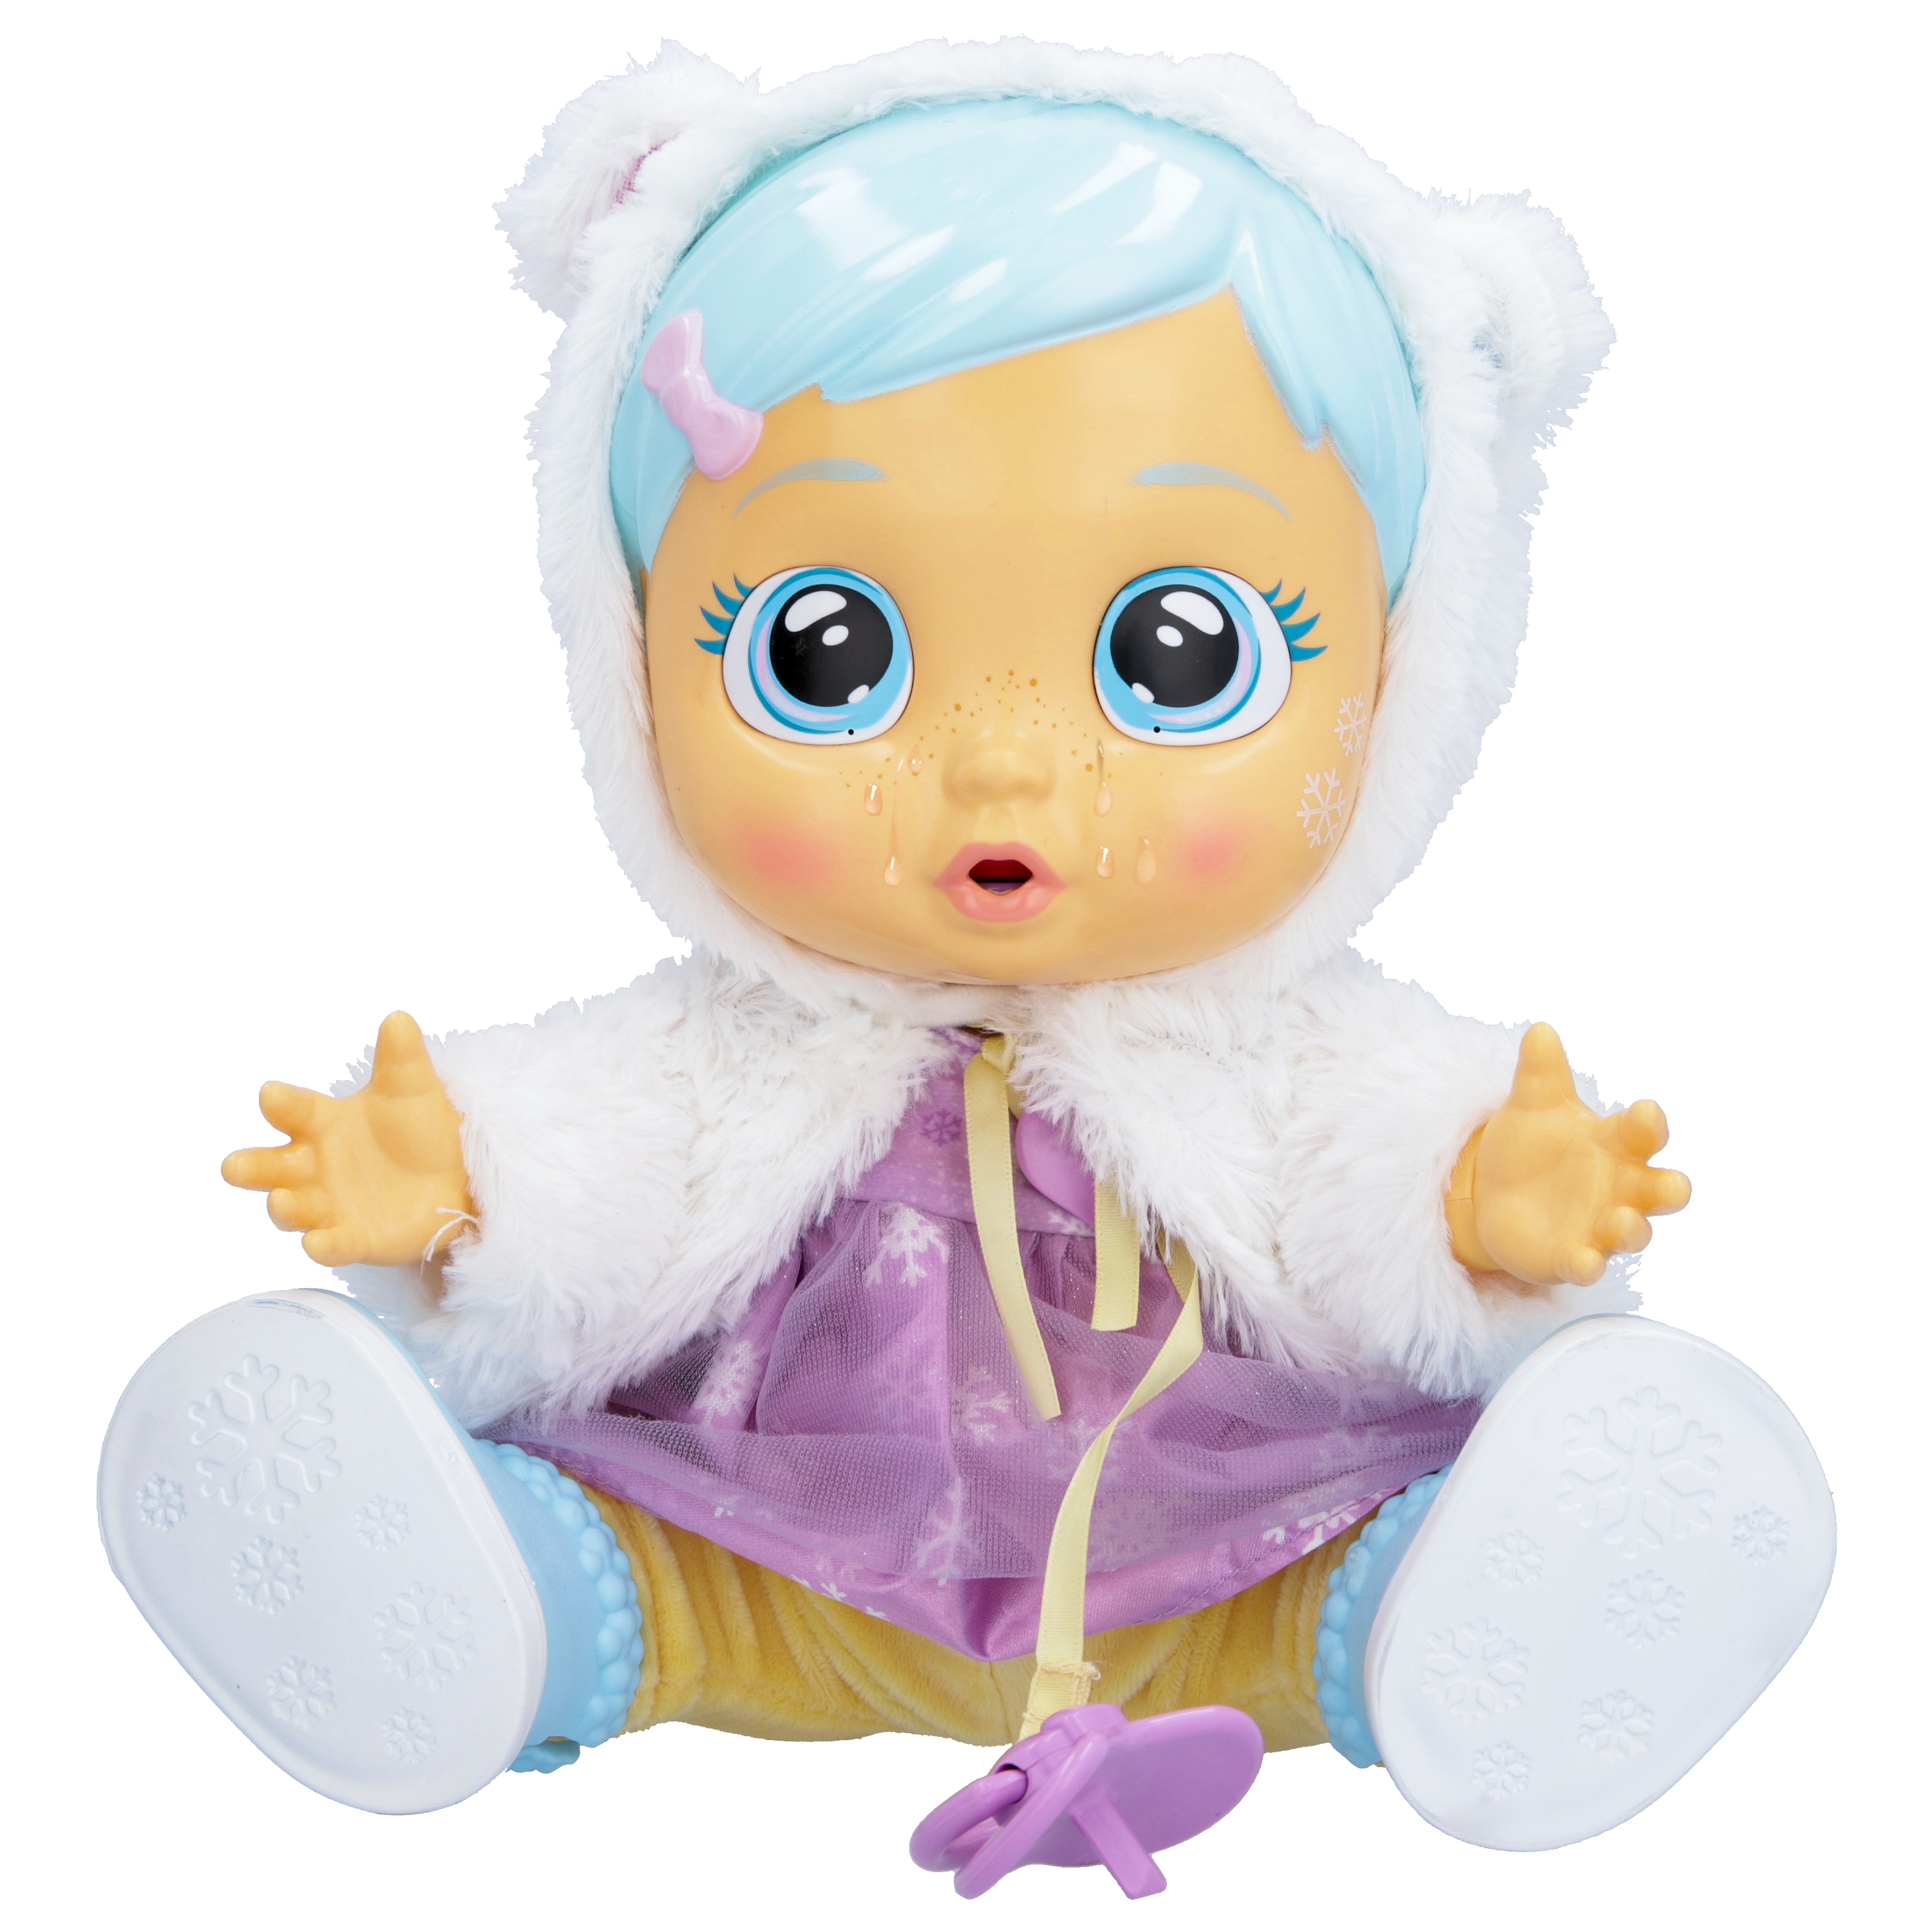 Bambola giocattolo funzionale per bambini dai 2 anni in su Bambola interattiva che piange lacrime vere e si ammala; con accessori da dottore Visita lo Store di Cry BabiesCRY BABIES Kristal Malatina 